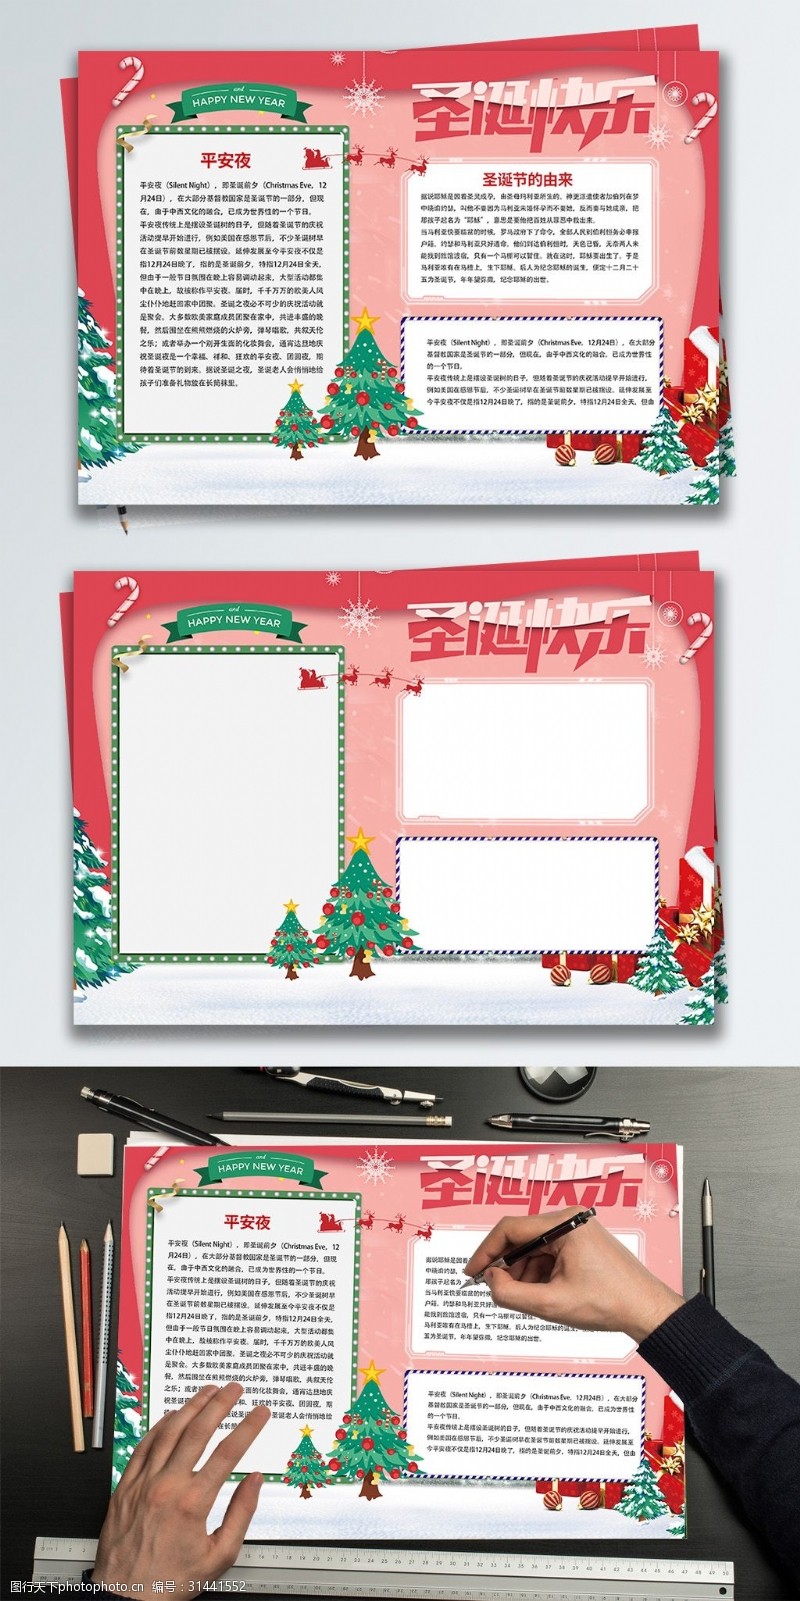 手抄报模板红色简约圣诞节日手抄报设计PSD模板